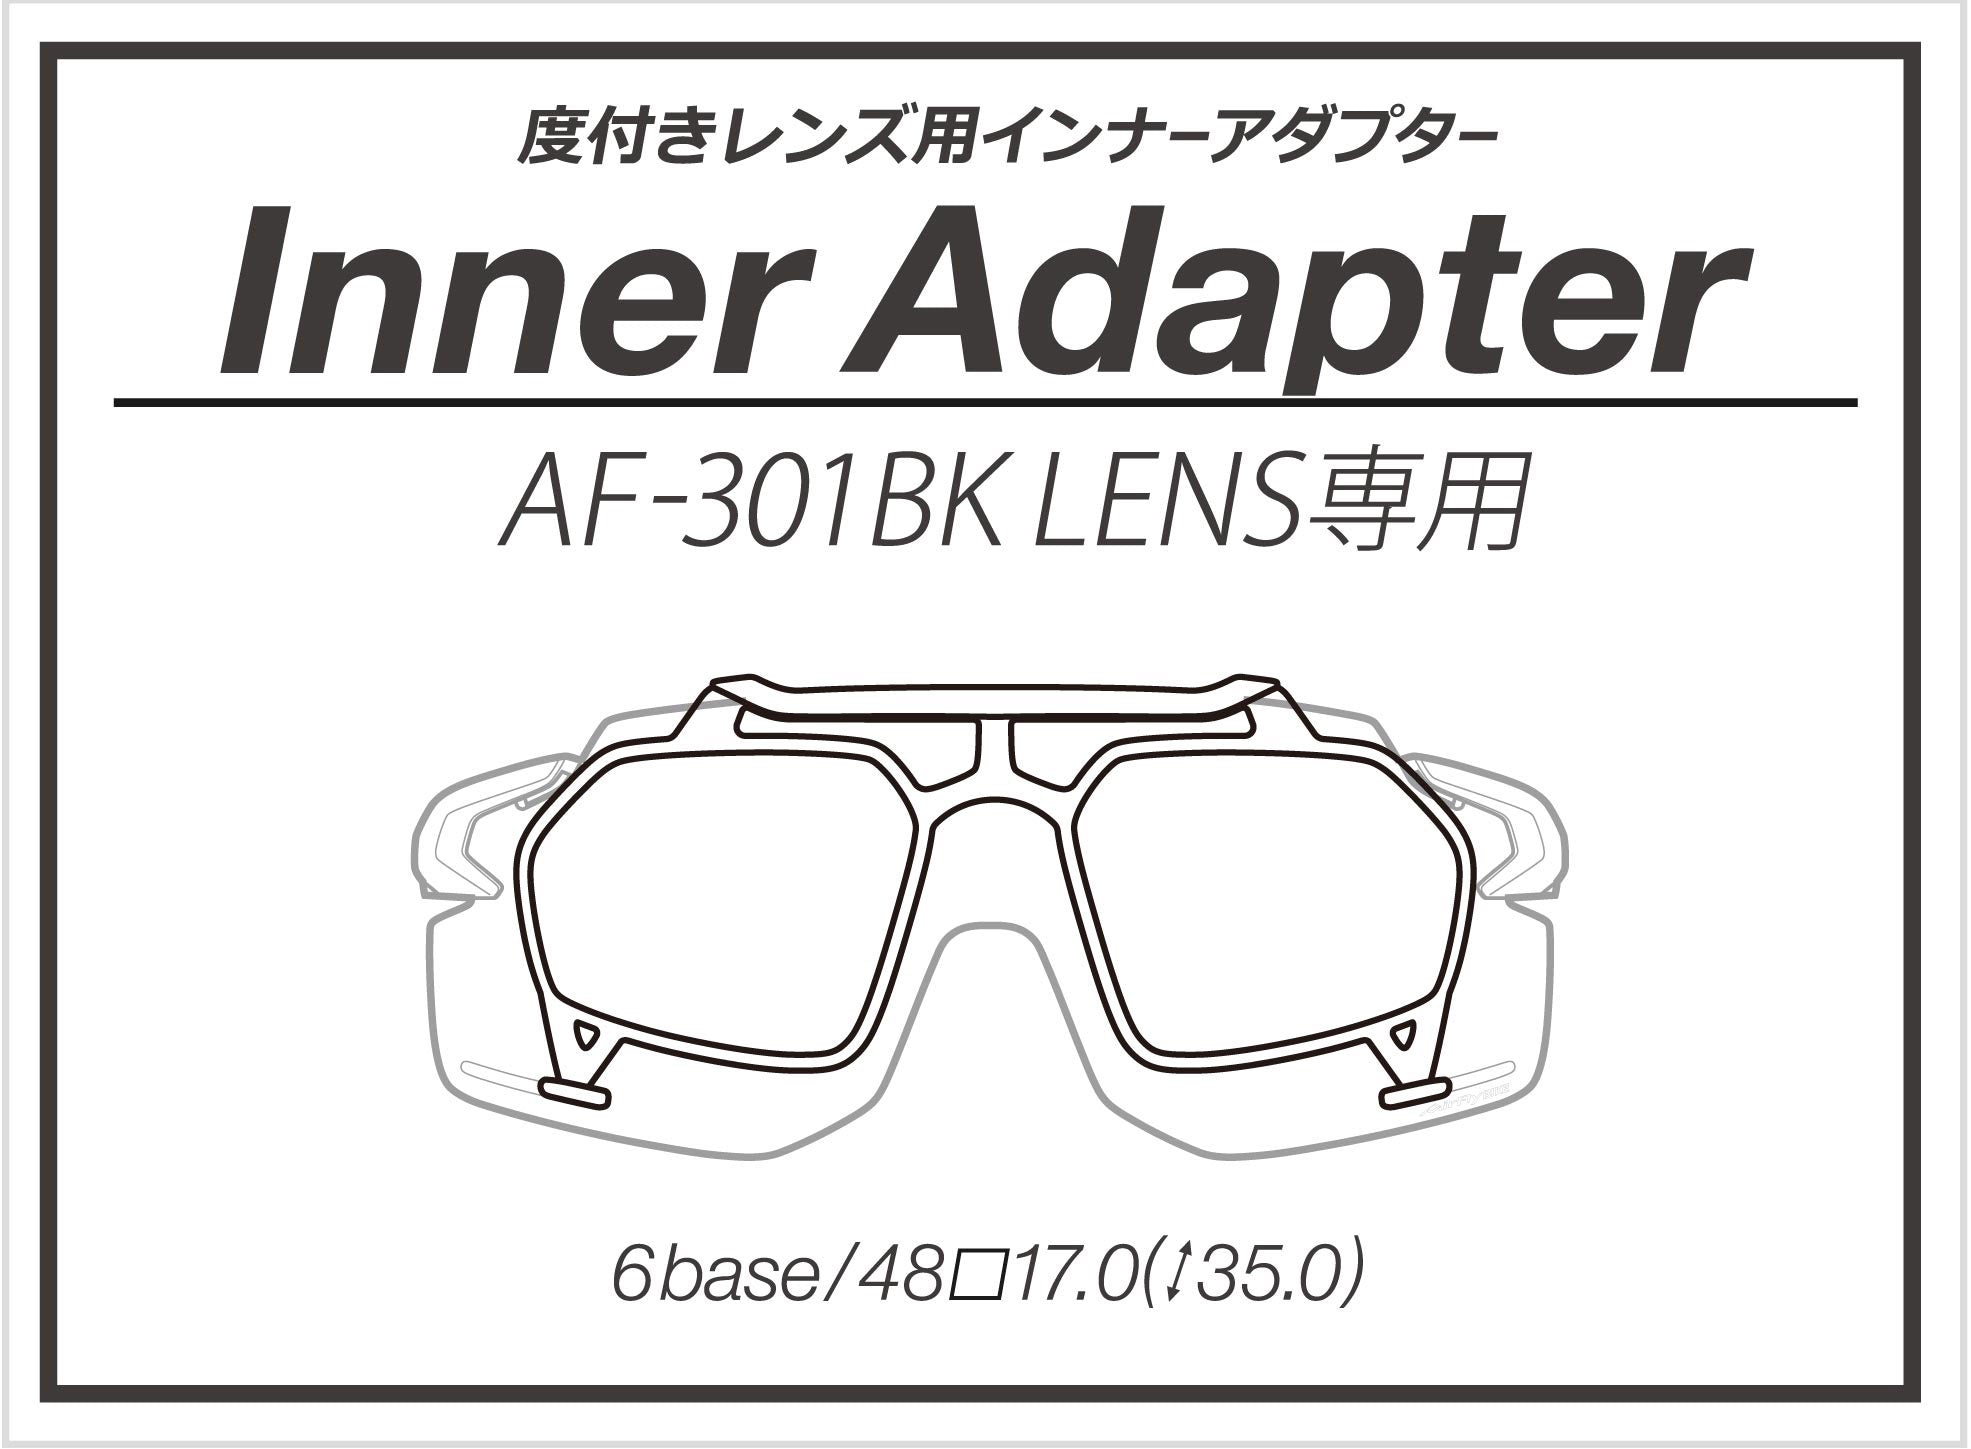 AirFly -AF301 Bike C34(Polarized Blue Mirror Lens)【Restock Soon】